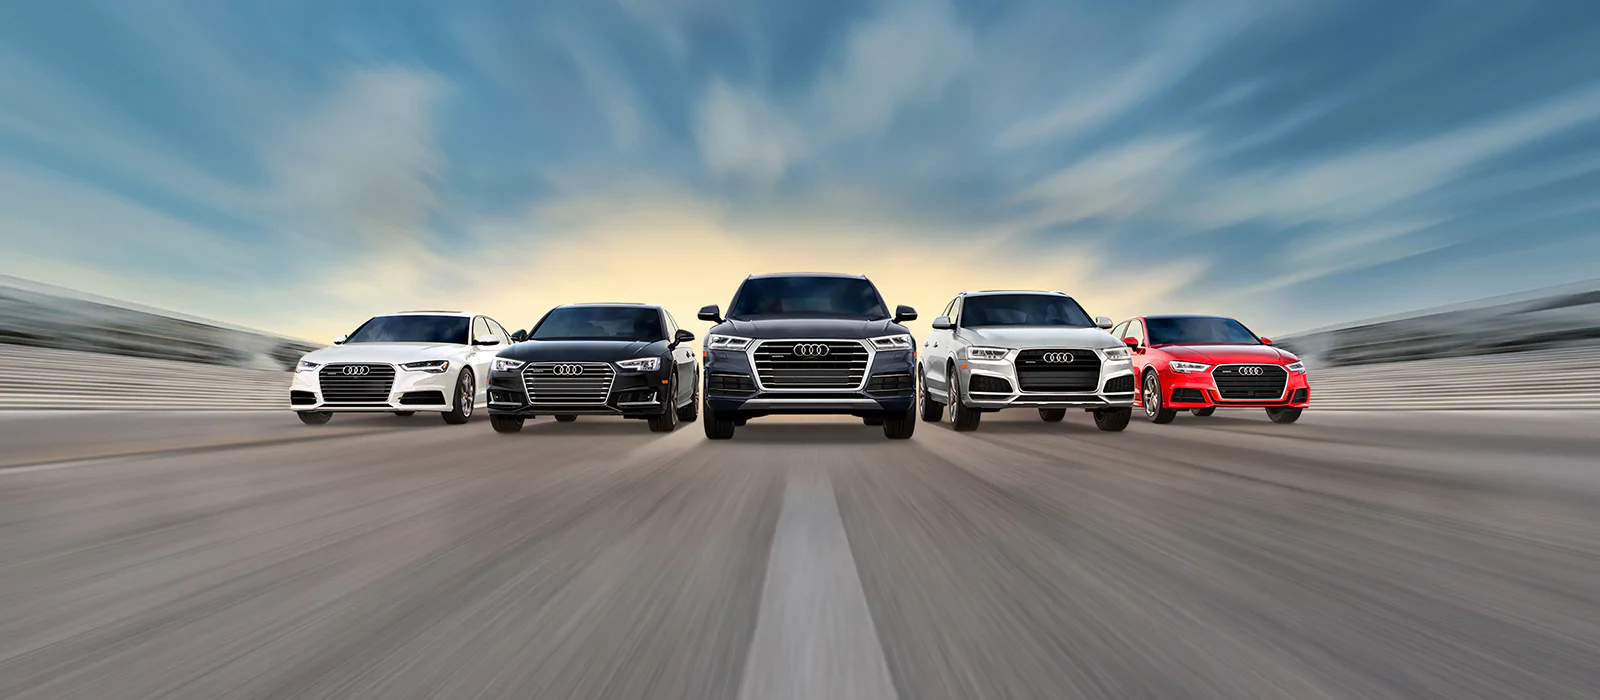 SUV Audi mới nằm trong kế hoạch tái định hình dòng sản phẩm của hãng